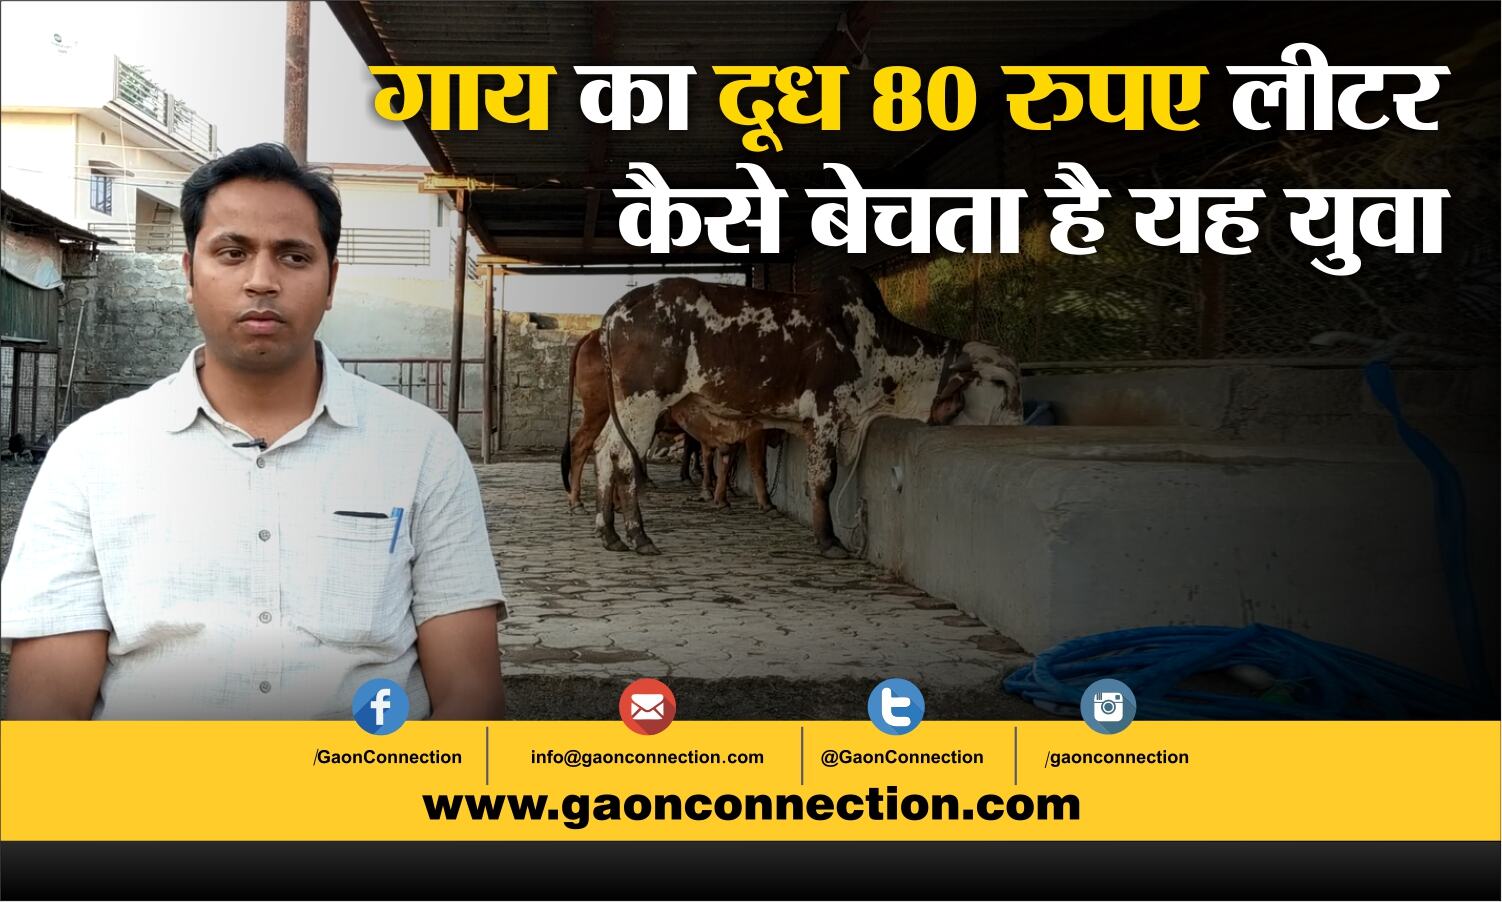 इस युवा ने पहले देसी गाय के बारे में लोगों को किया जागरूक, अब 80 रुपए लीटर बेच रहा दूध